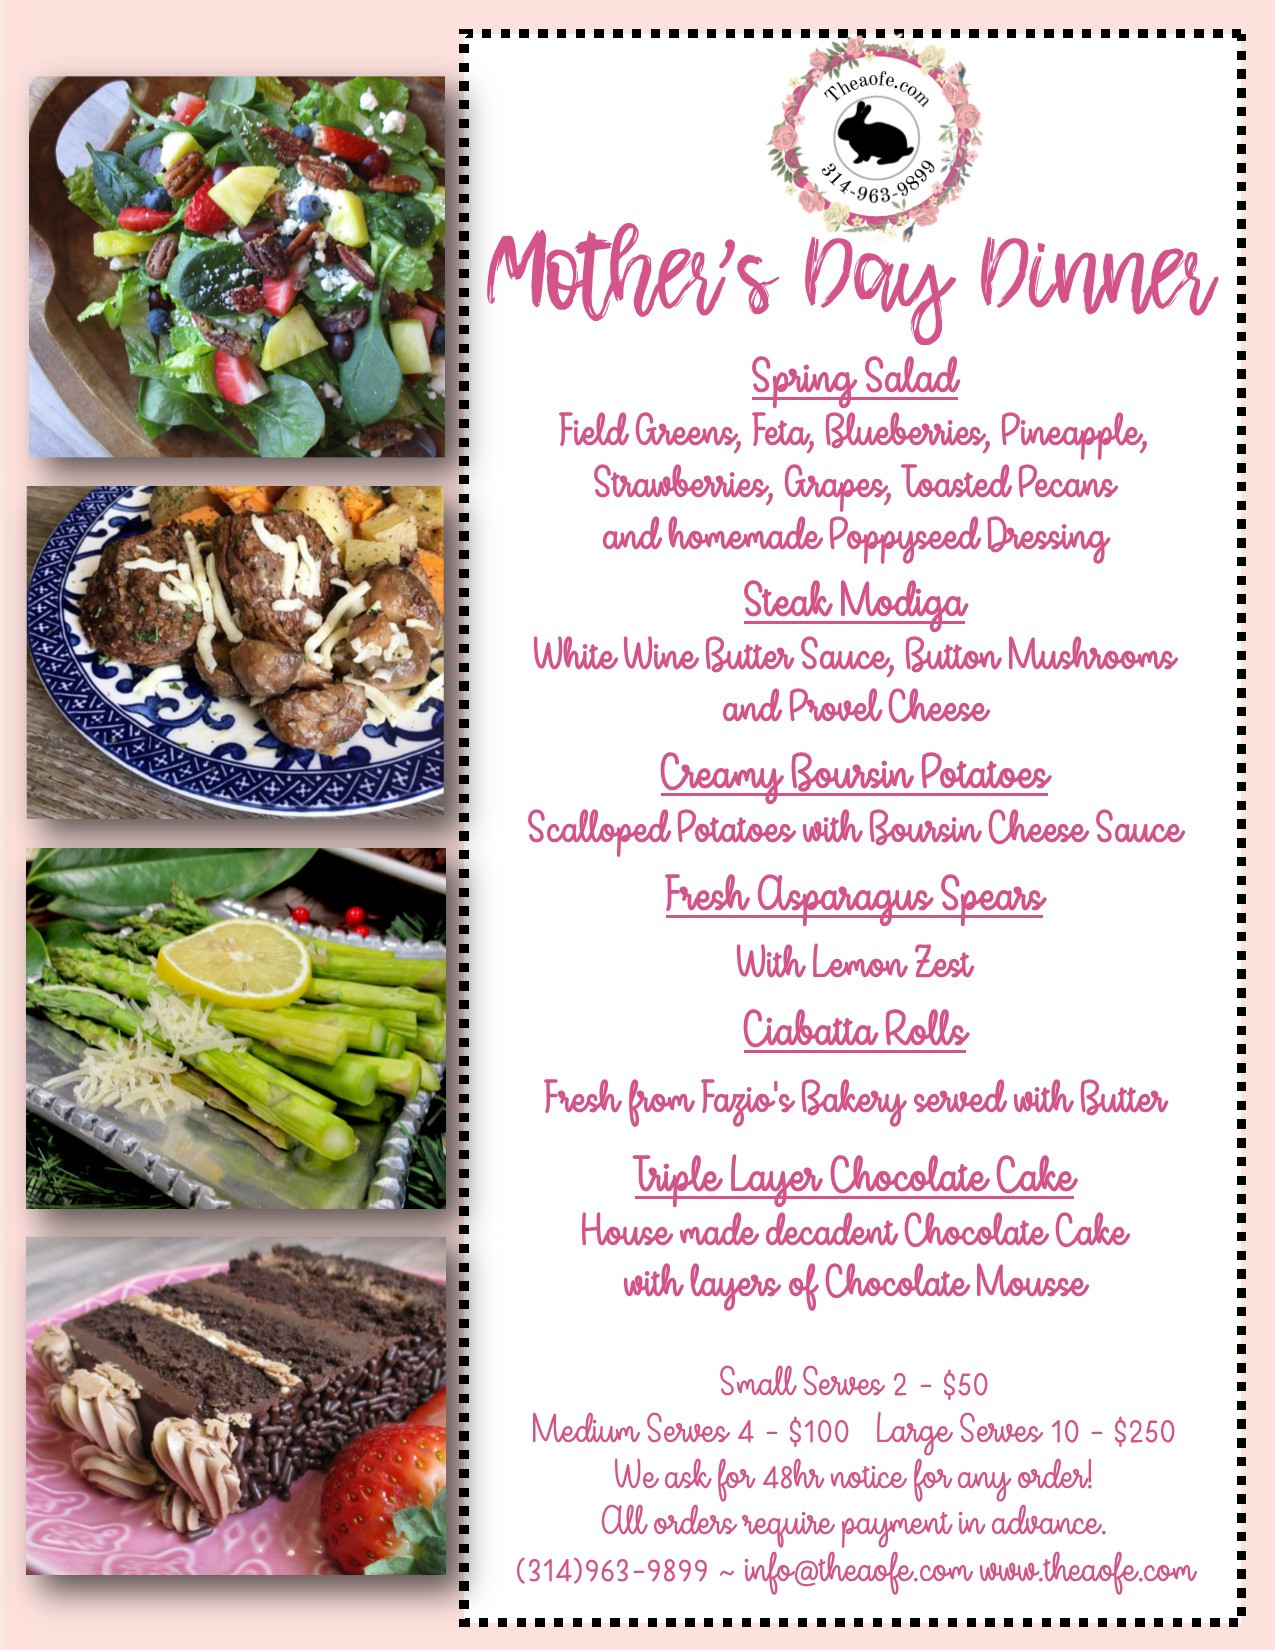 Mothers Day Dinner Restaurant
 Mother s Day Dinner 2019 The Art of Entertaining The Art